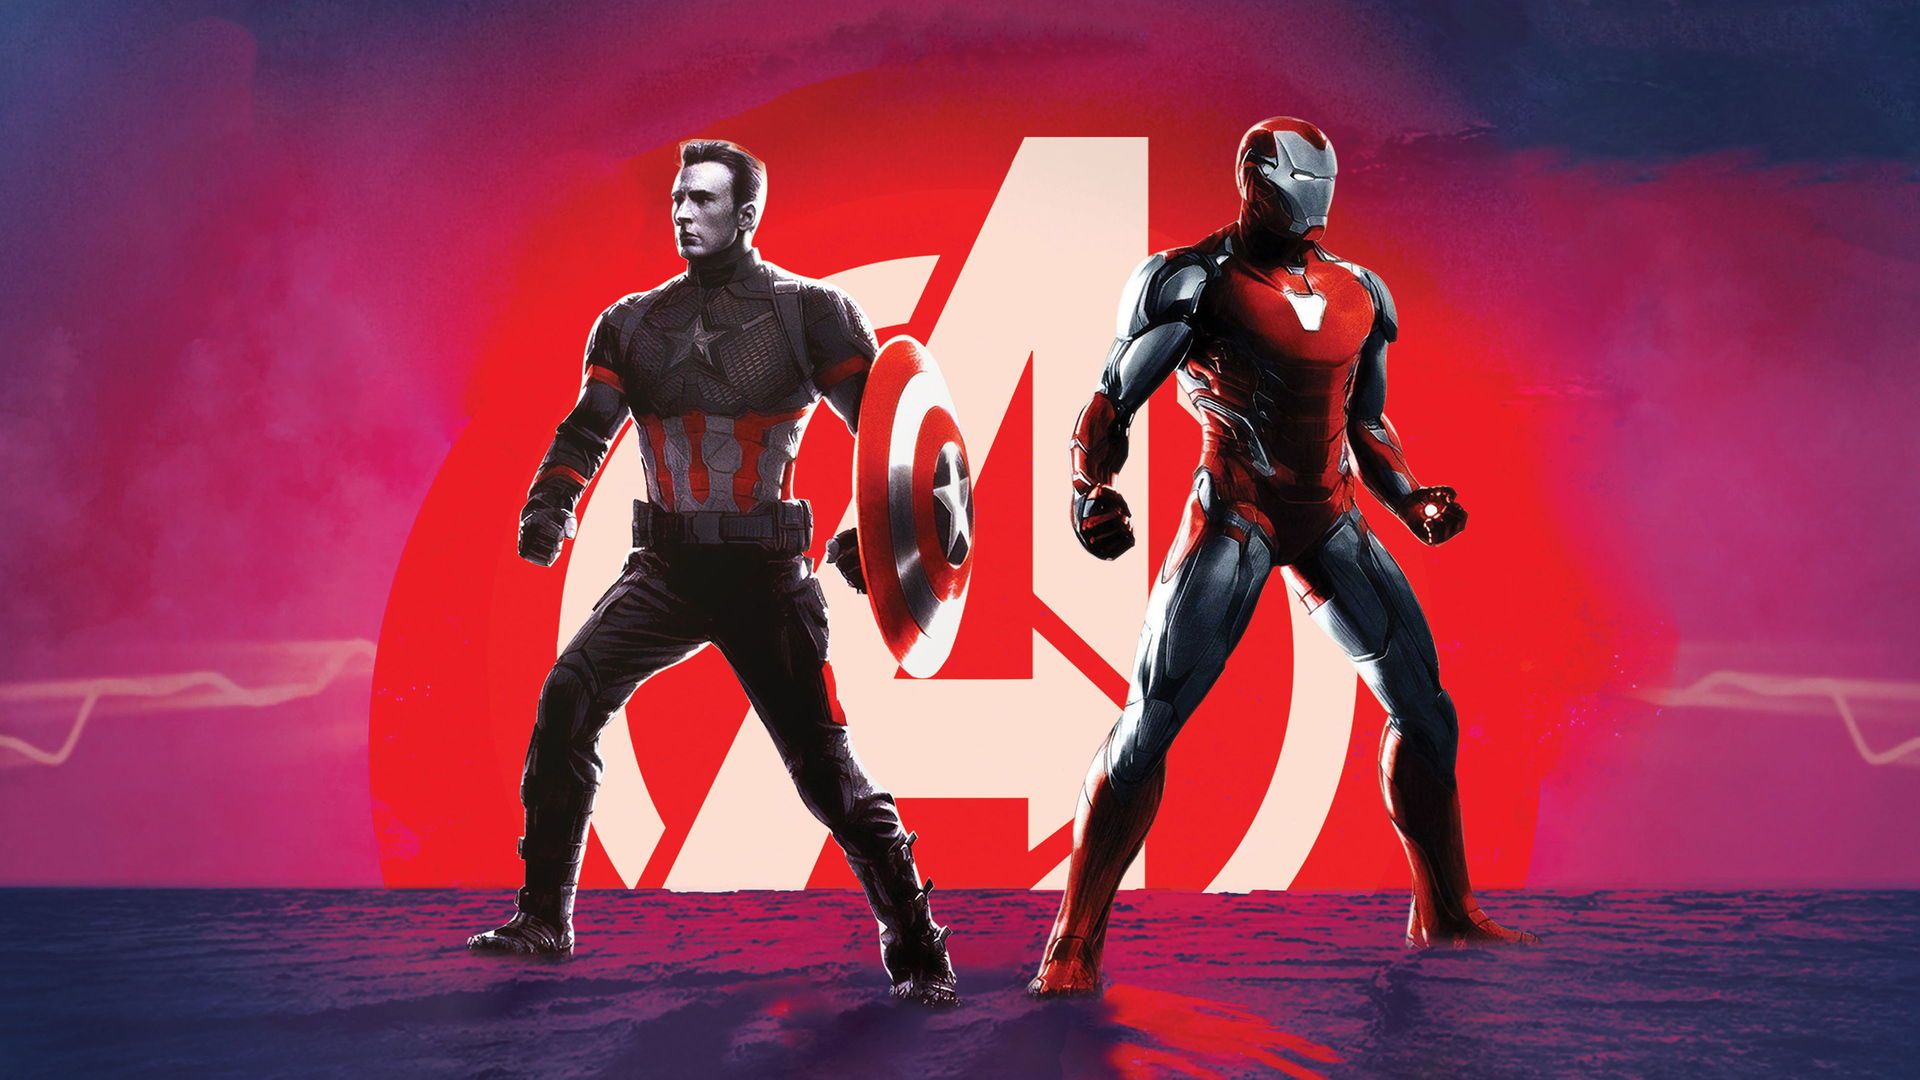 Tony Stark Funeral Avengers Endgame Wallpapers